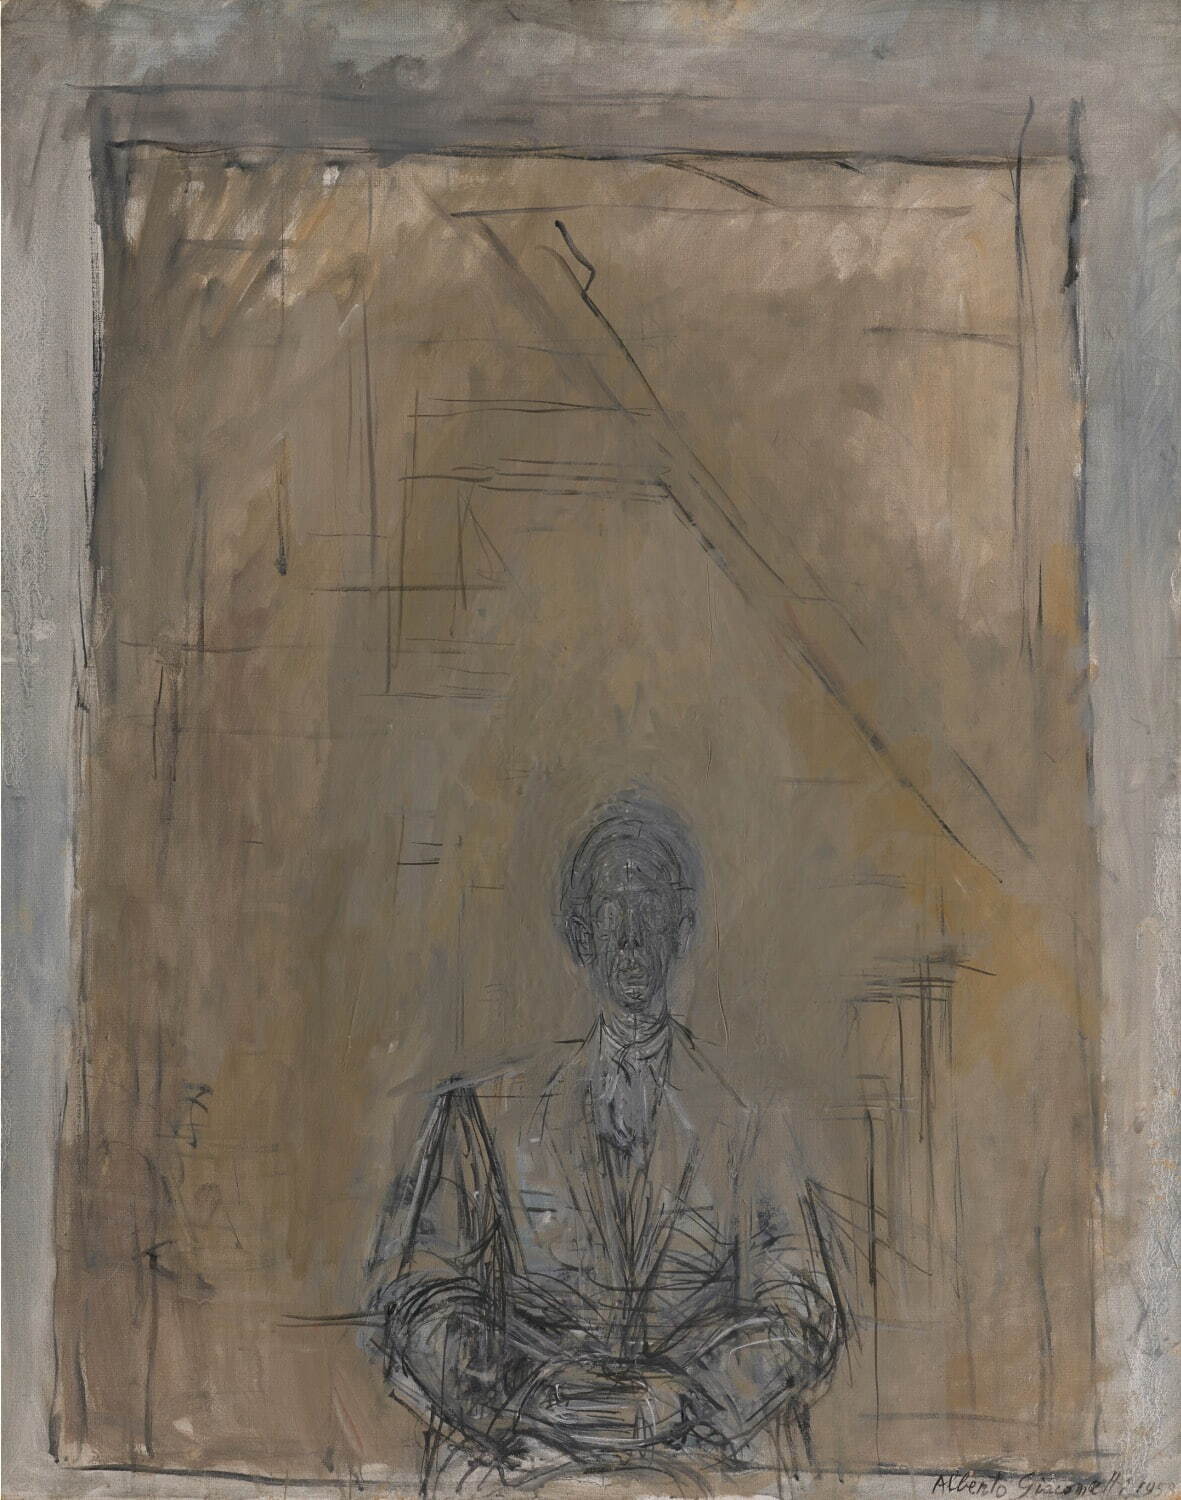 アルベルト・ジャコメッティ 《矢内原》
1958年 石橋財団アーティゾン美術館